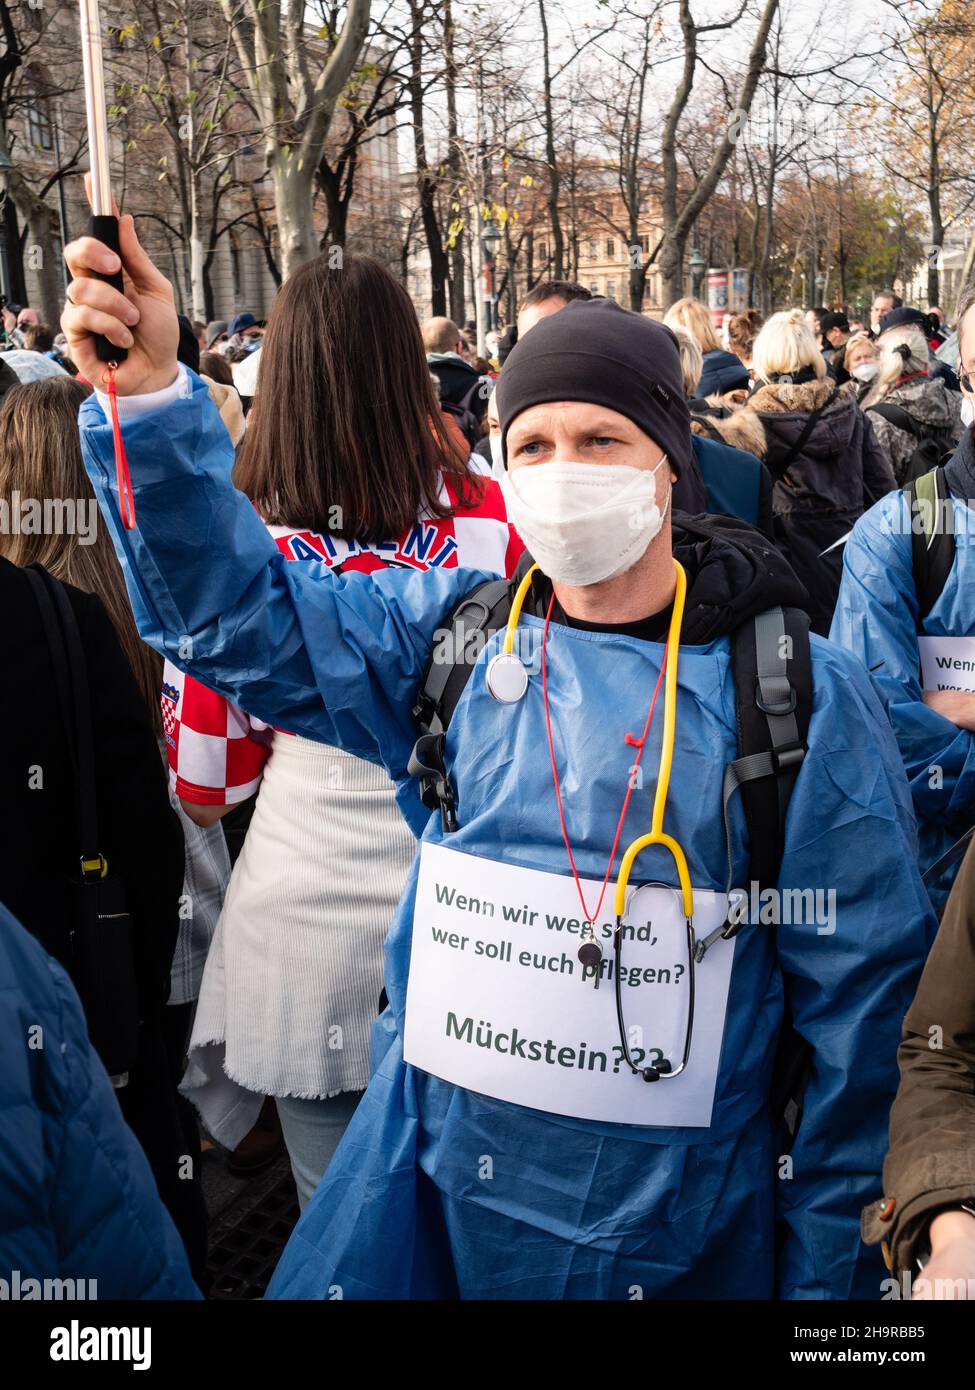 Wien, Österreich - 20 2021. November: Anti-Vax Covid-19 Demonstrator Krankenschwester oder Krankenschwester bei einer Demonstration, Kundgebung oder Demonstration. Stockfoto